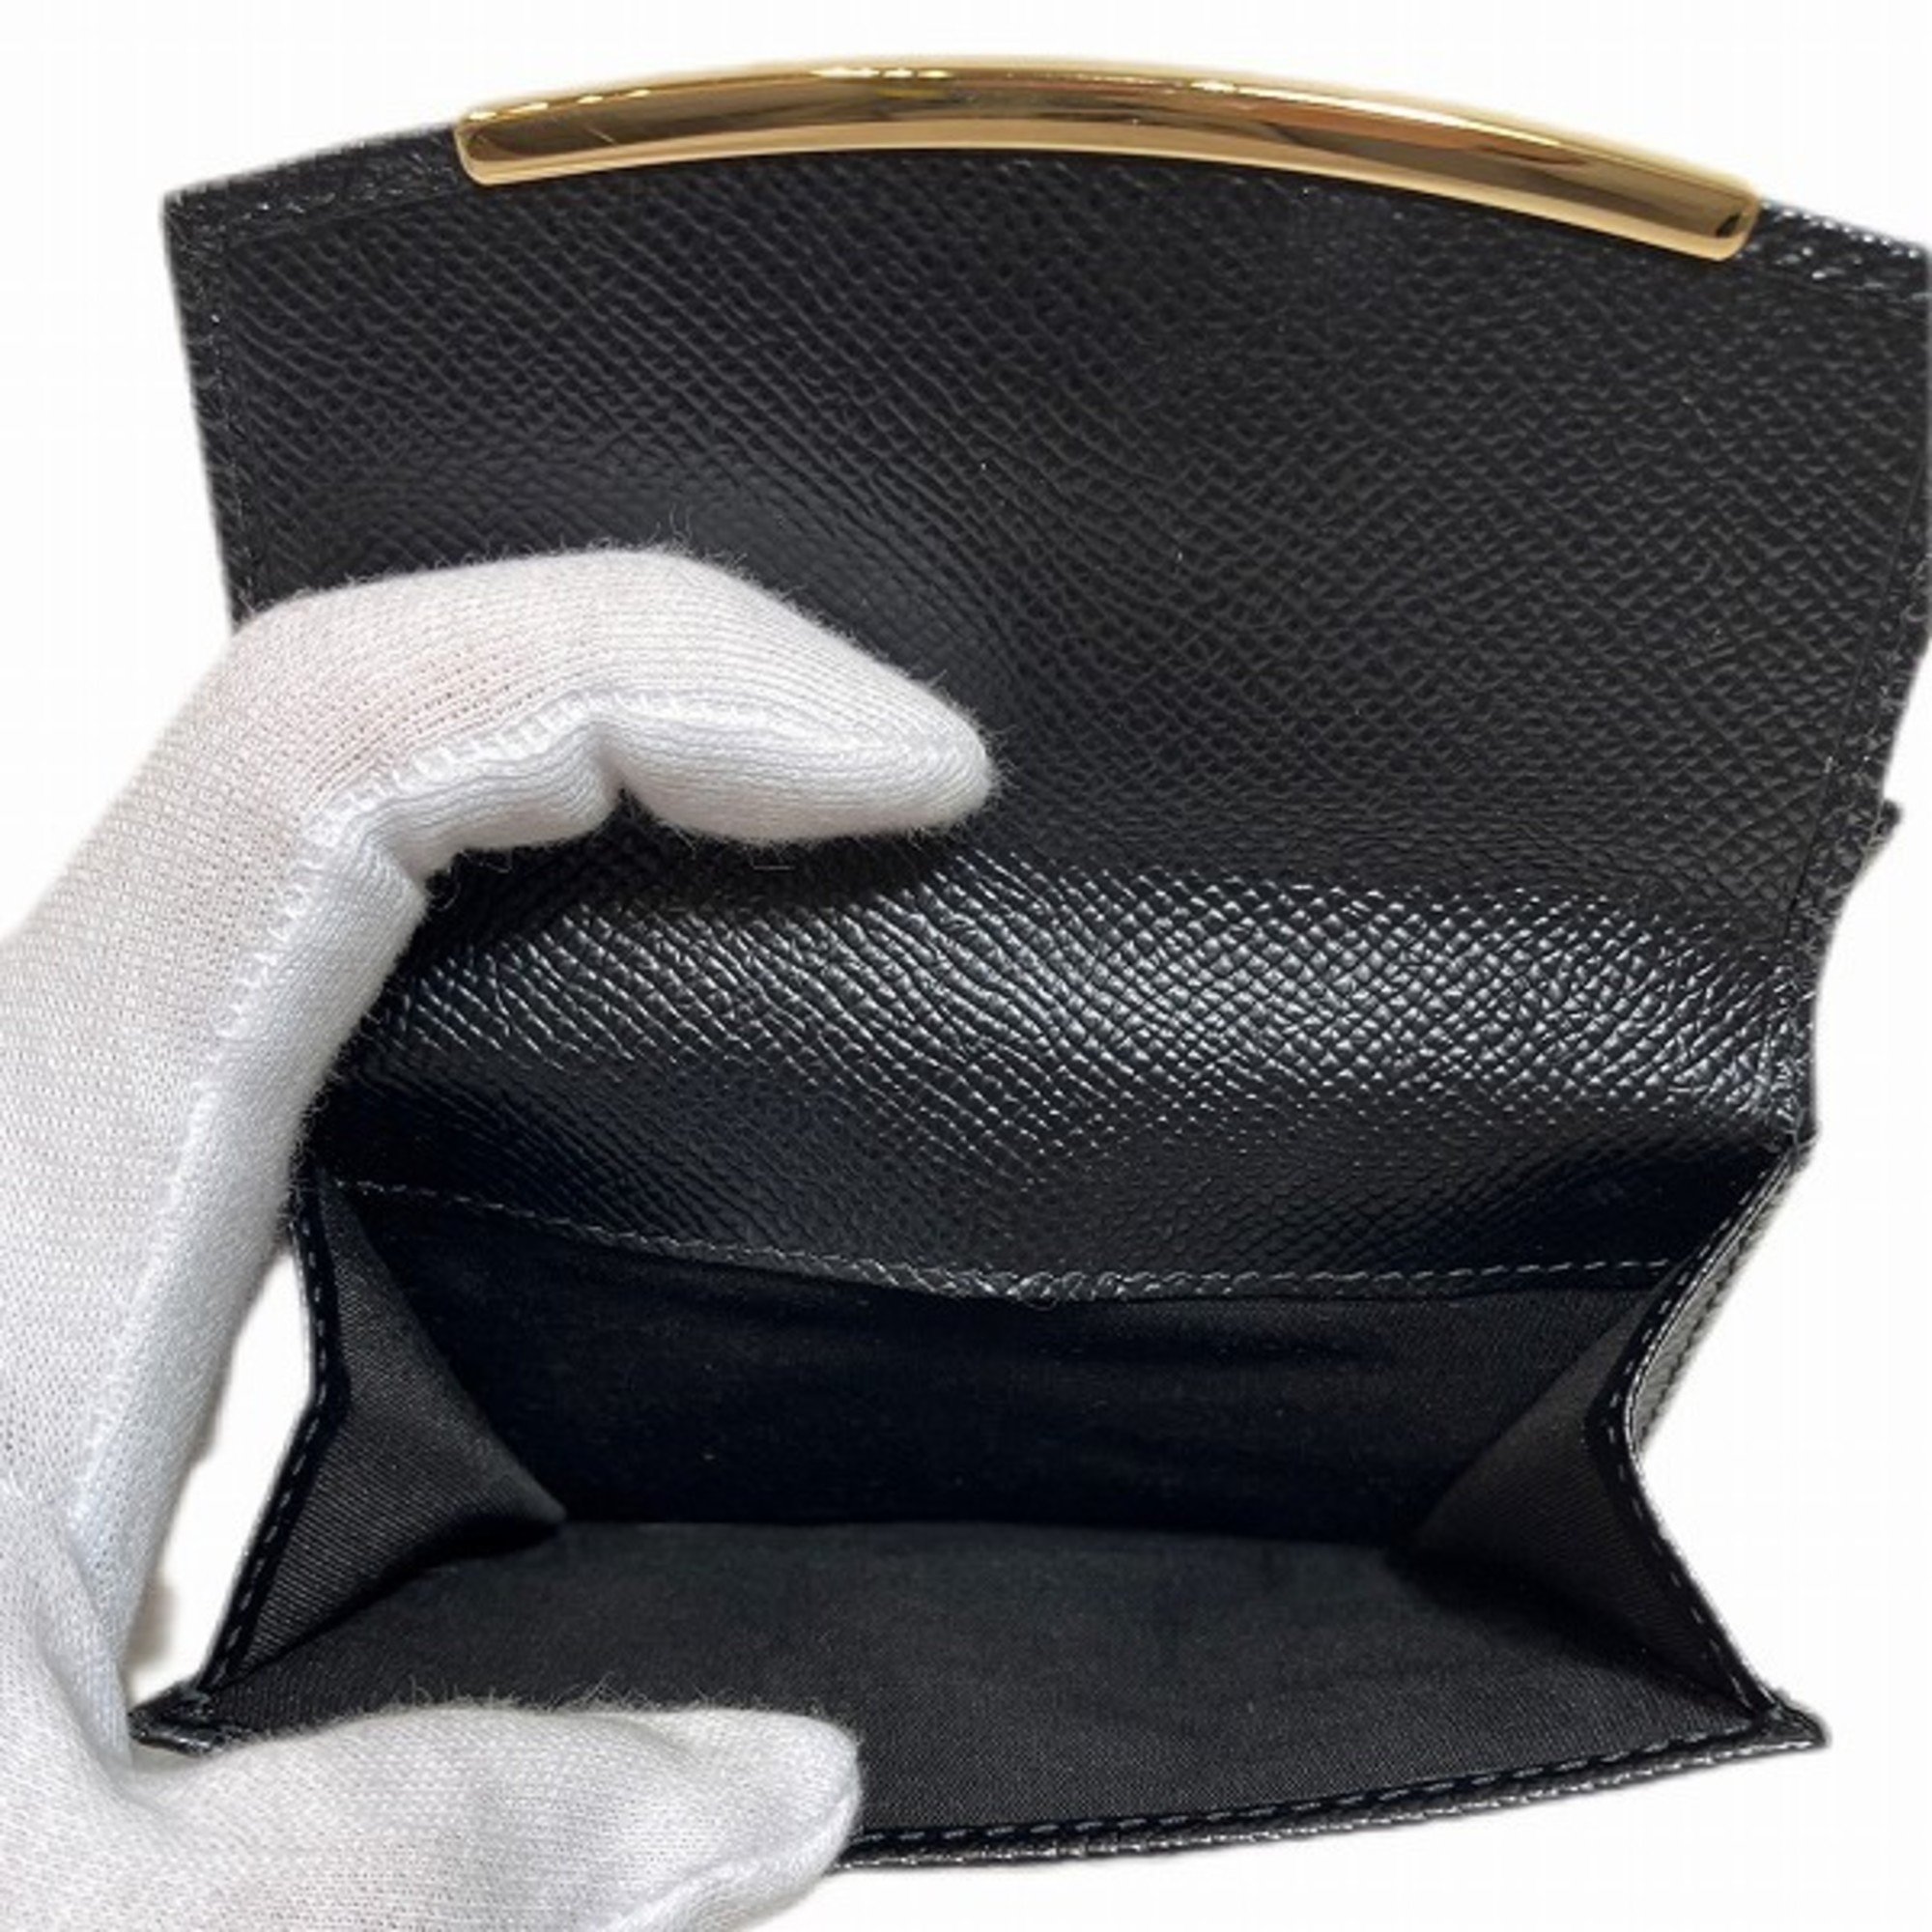 Salvatore Ferragamo Ferragamo Wallet Bi-fold for Men and Women